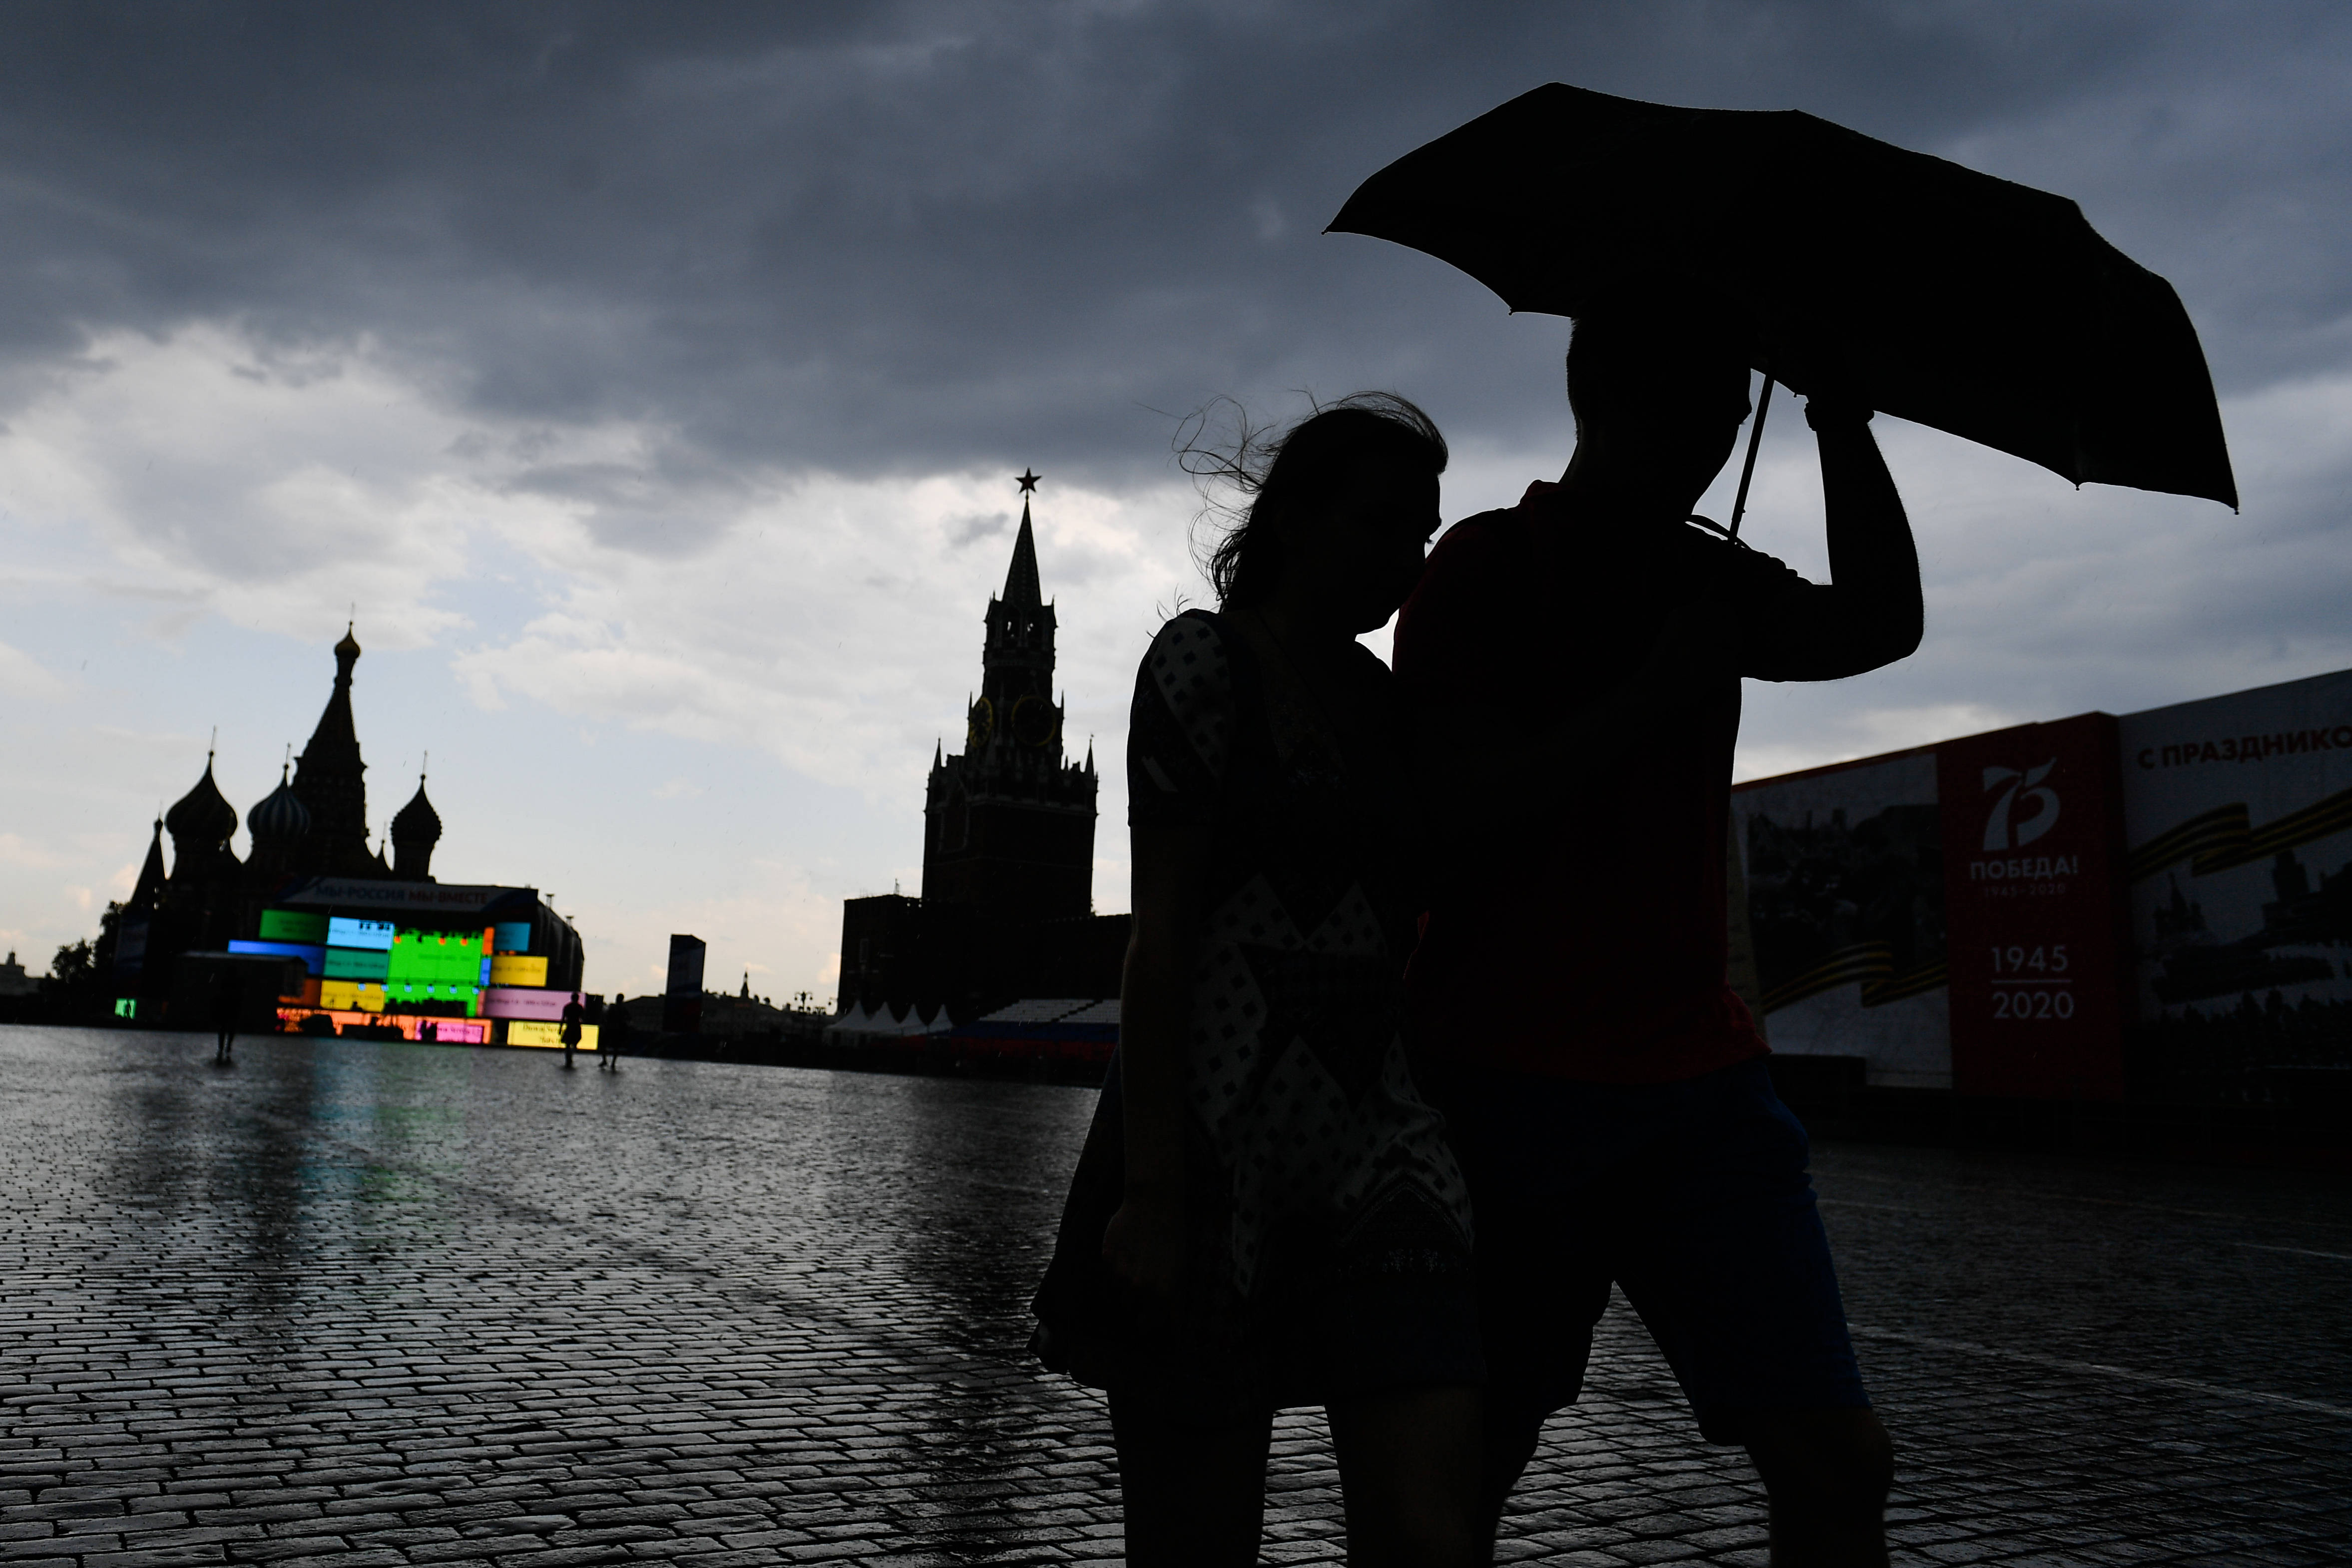 外代,2020年6月11日 6月10日,在俄罗斯莫斯科,人们打伞走在雨中